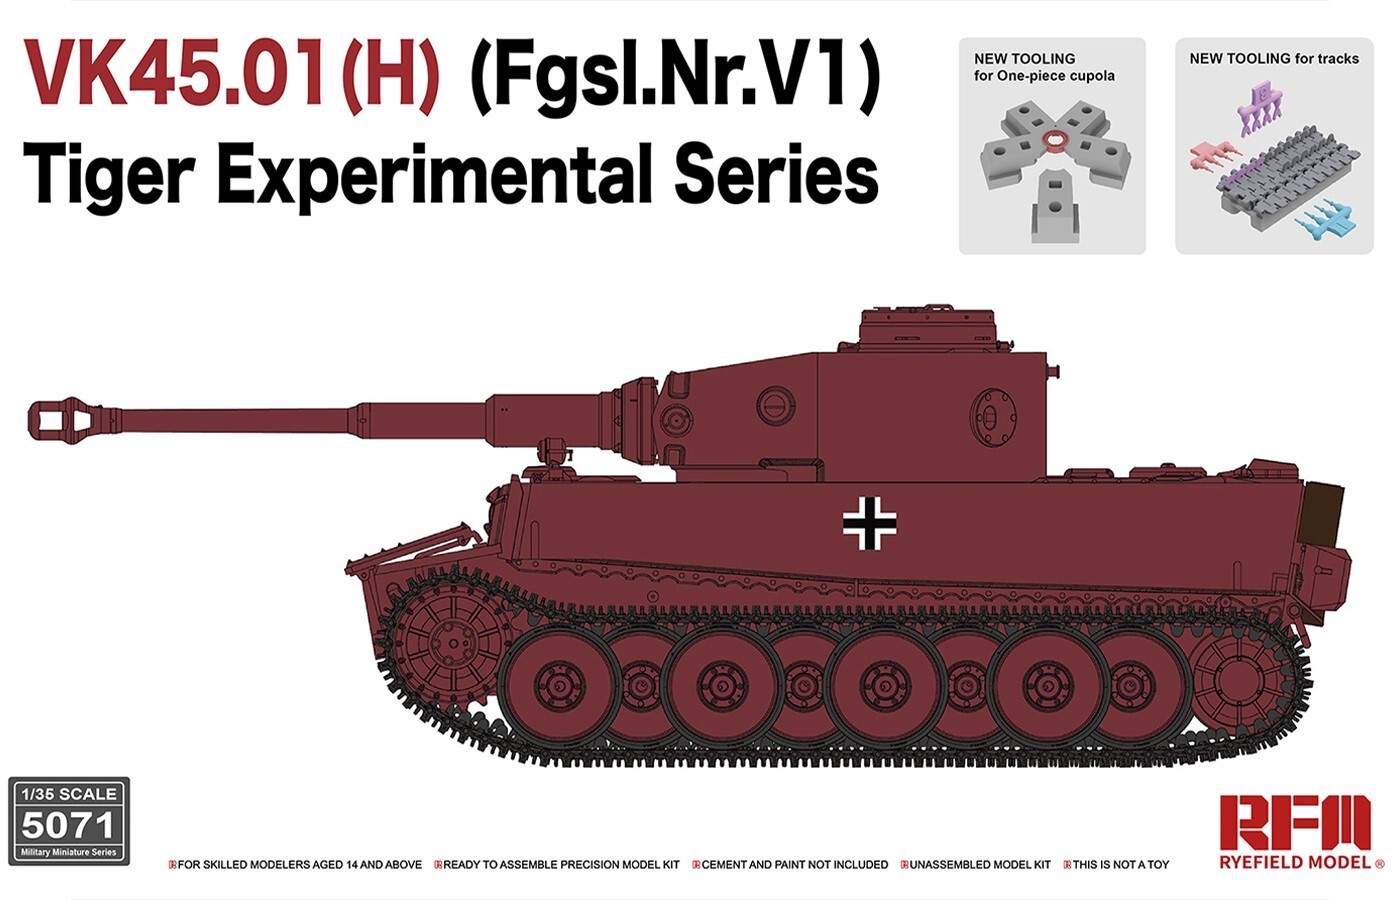 VK45.01(H) Fgsl.Nr.V1 Tiger Experimental